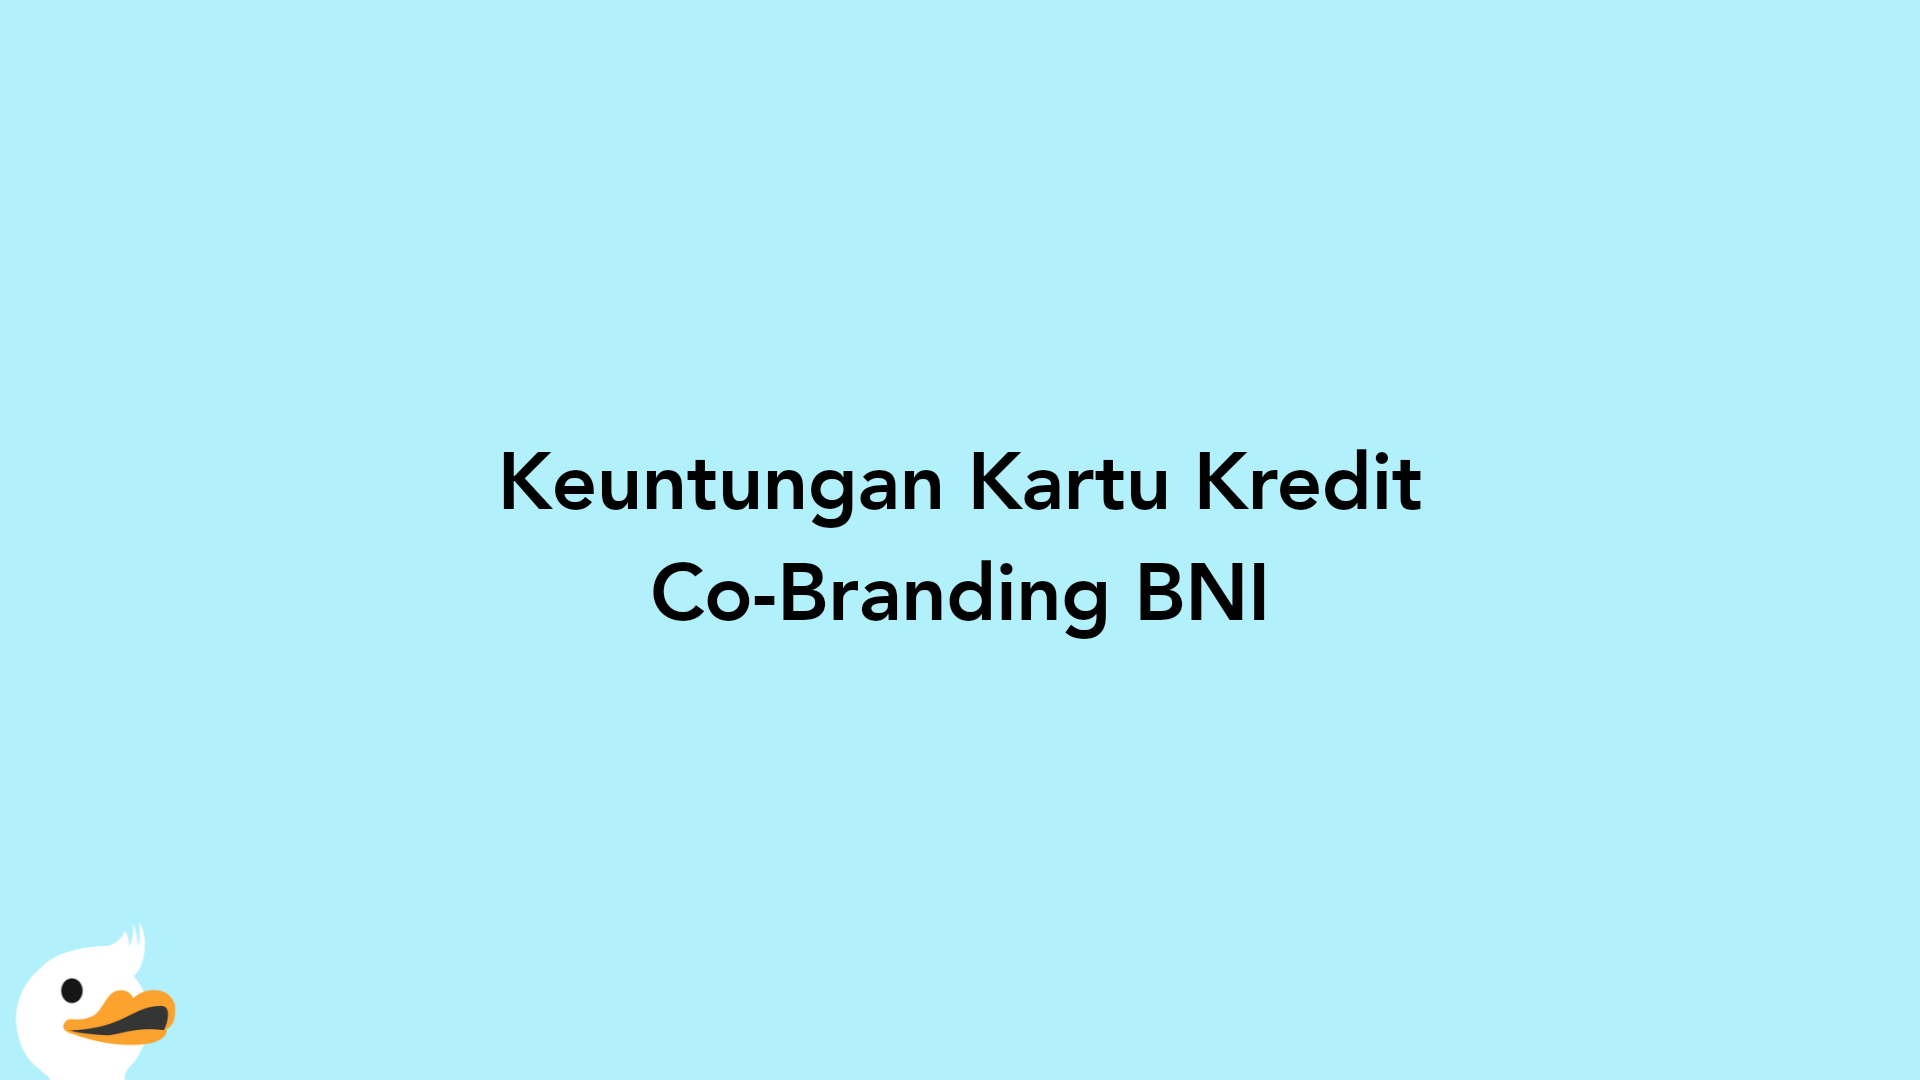 Keuntungan Kartu Kredit Co-Branding BNI